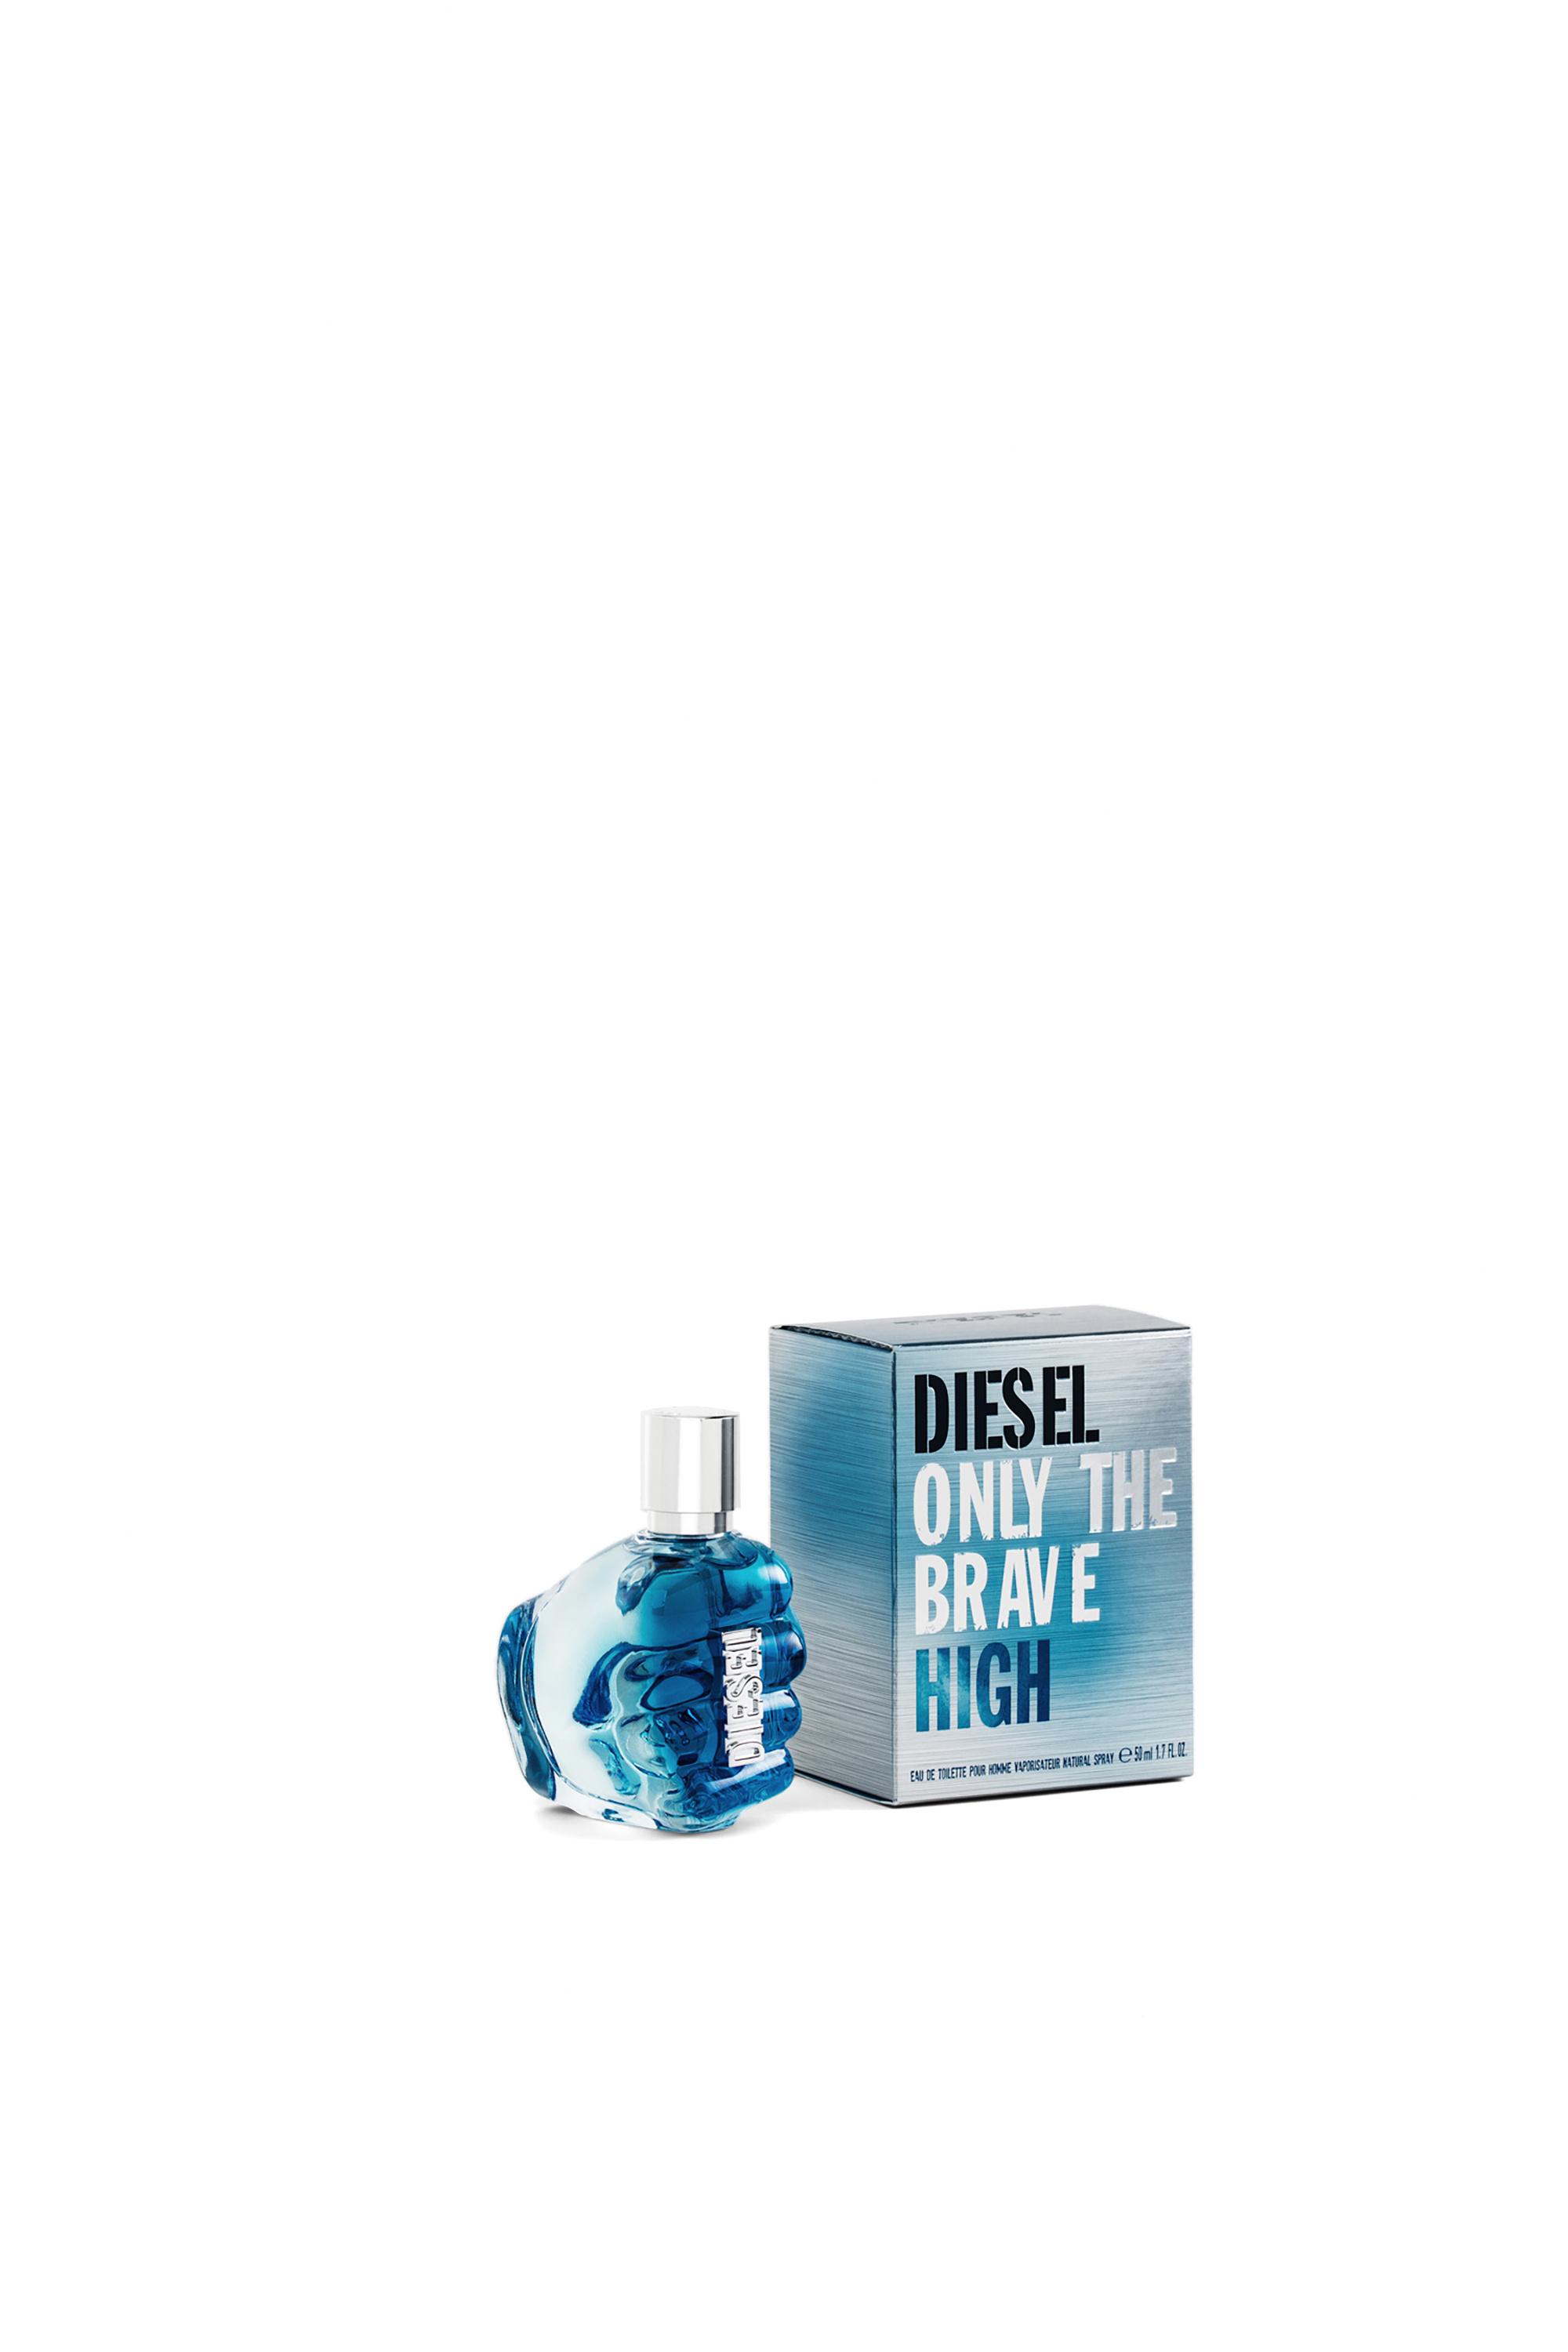 Diesel - ONLY THE BRAVE HIGH  50ML, Hellblau - Image 1